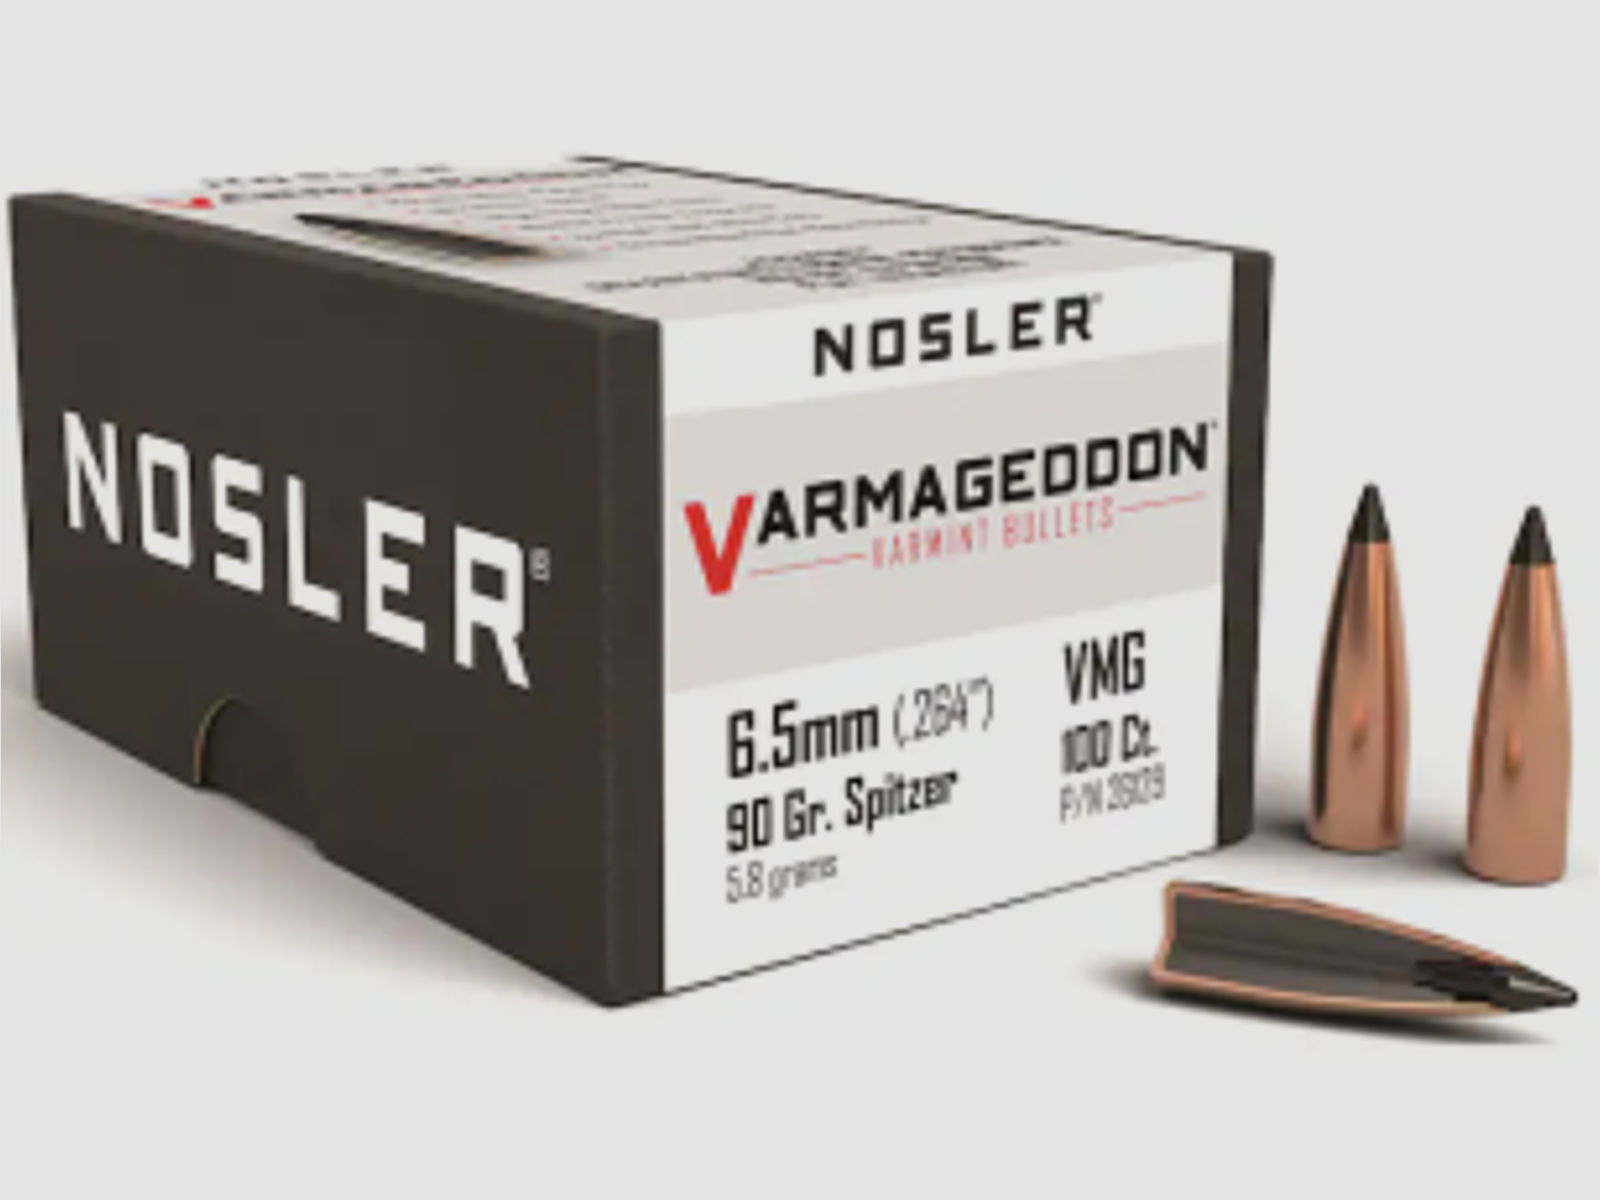 Nosler Geschoss 6,5mm/.264 Varmageddon 90GR Teilmantel Tipped Flat Base 100 Stück